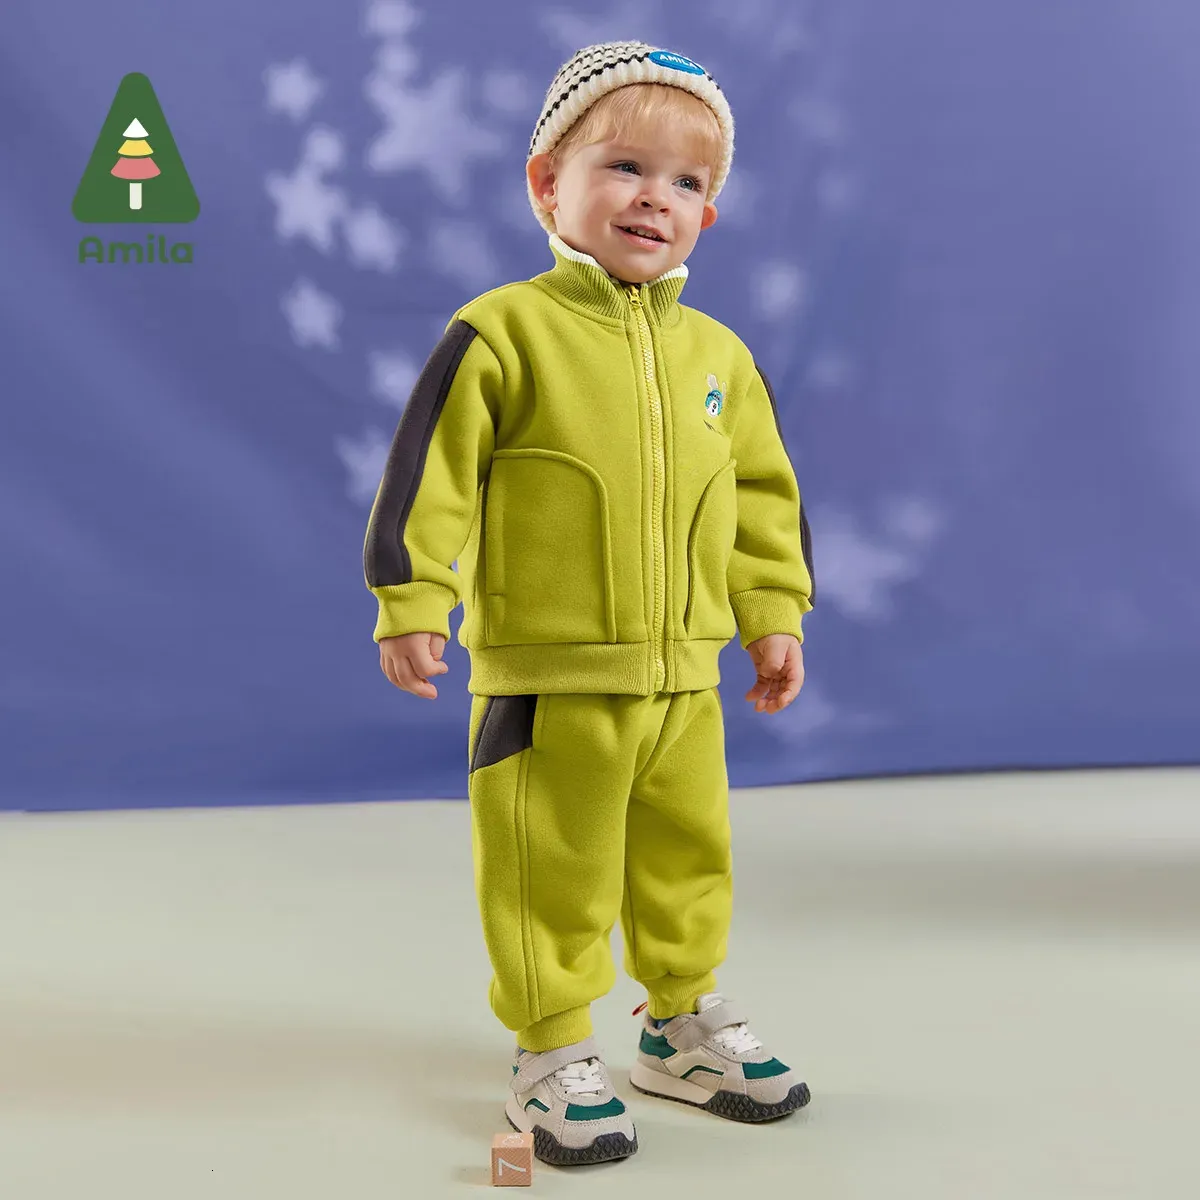 Zestawy odzieży Amila Zestaw ubrania dla niemowląt Zima wielorysta wełna haft haftowa ciepłe ubranie dla niemowląt 231214